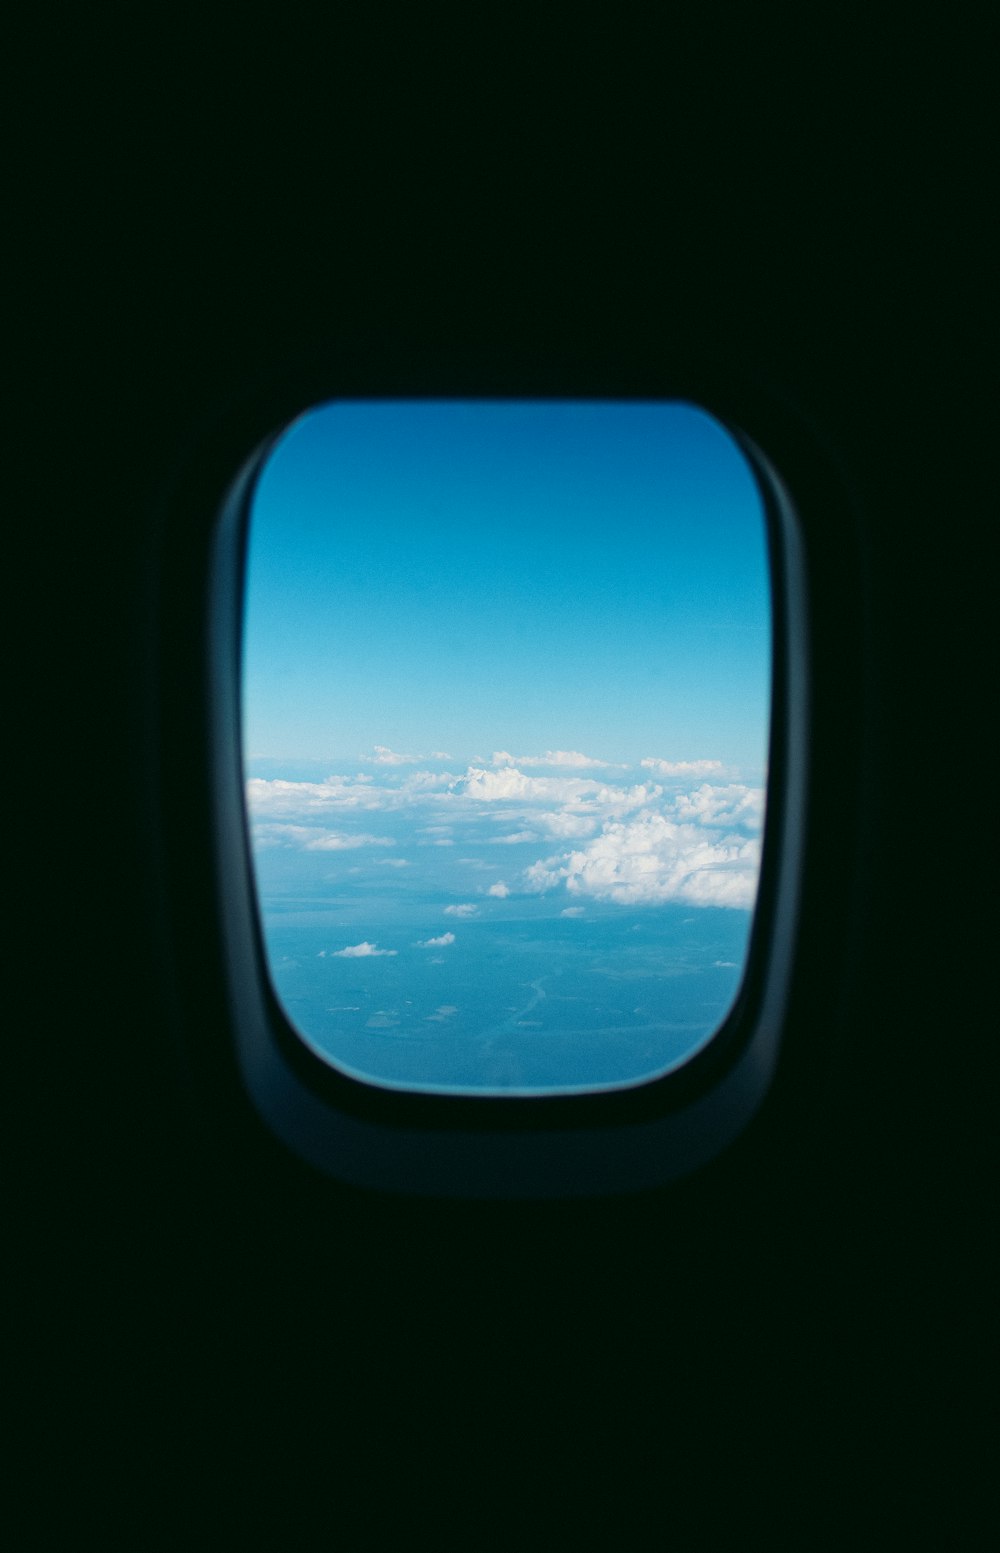 photographie de fenêtre d’avion